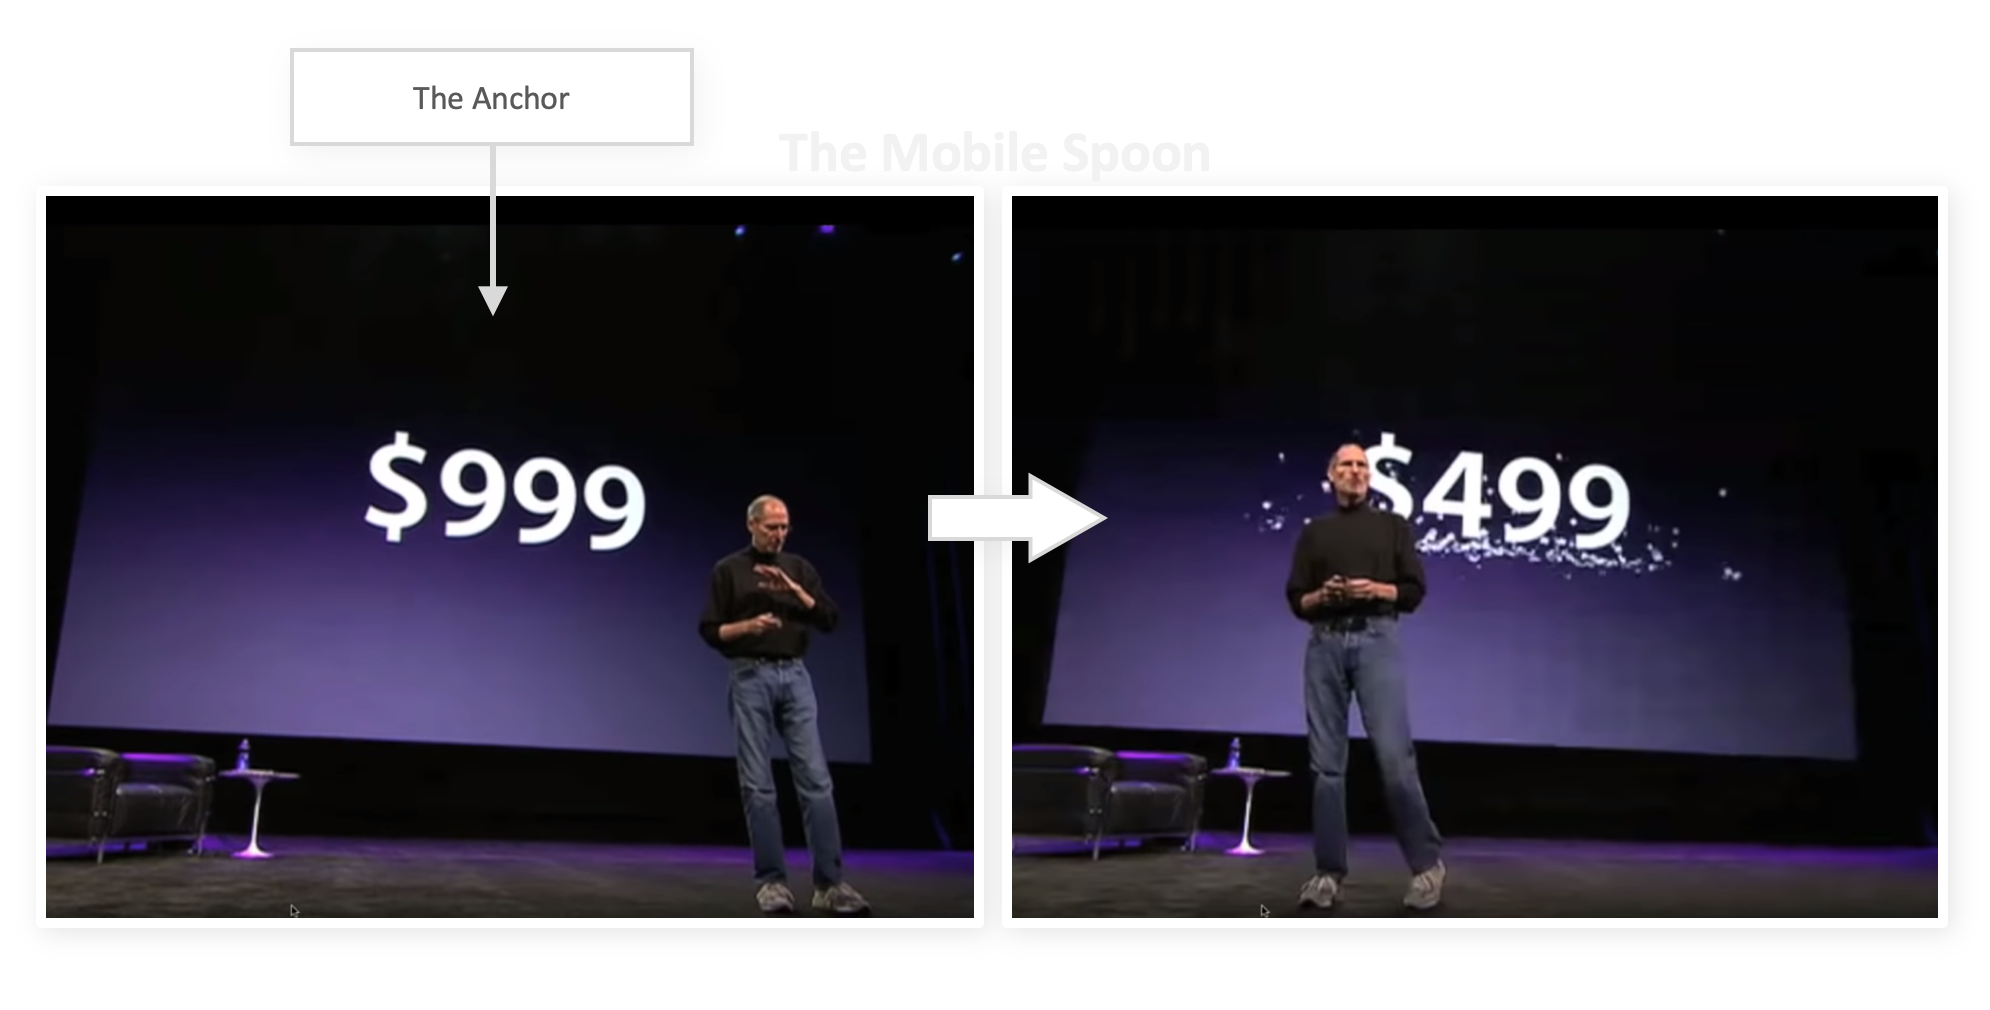 锚定效应 - 由Apple的史蒂夫乔布斯在iPad发布时执行